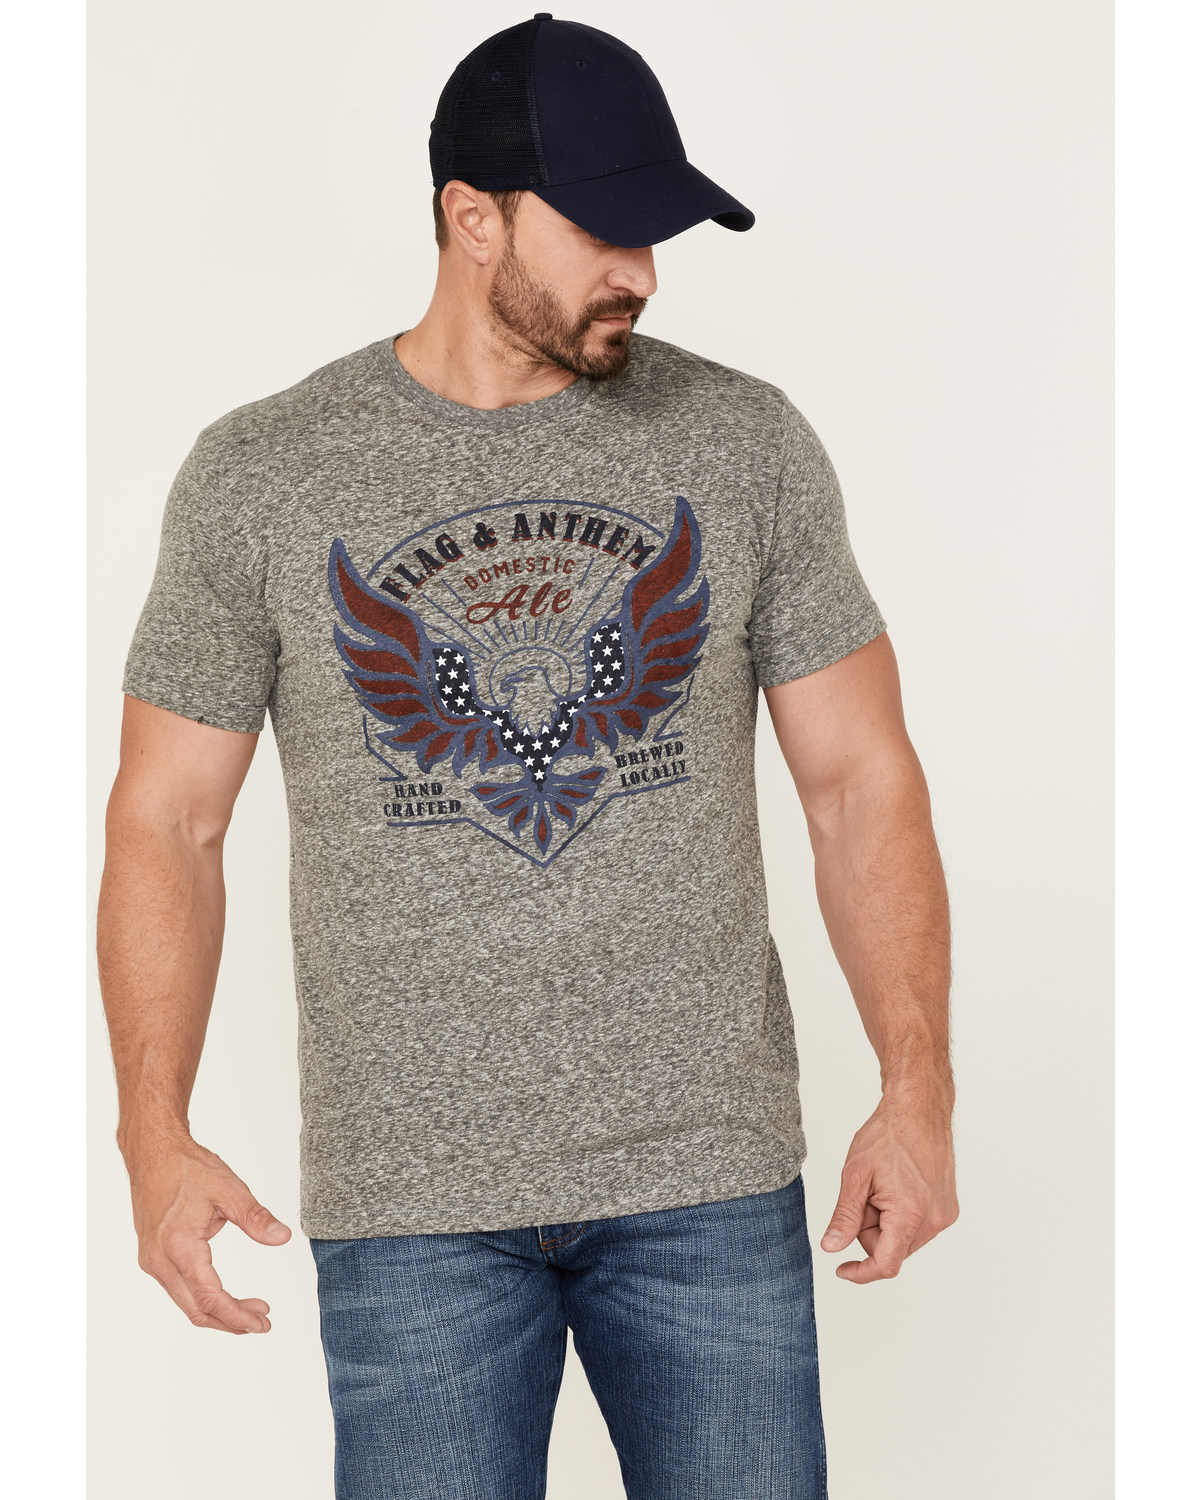 Flag & Anthem Men's Eagle Ale Graphic T-Shirt